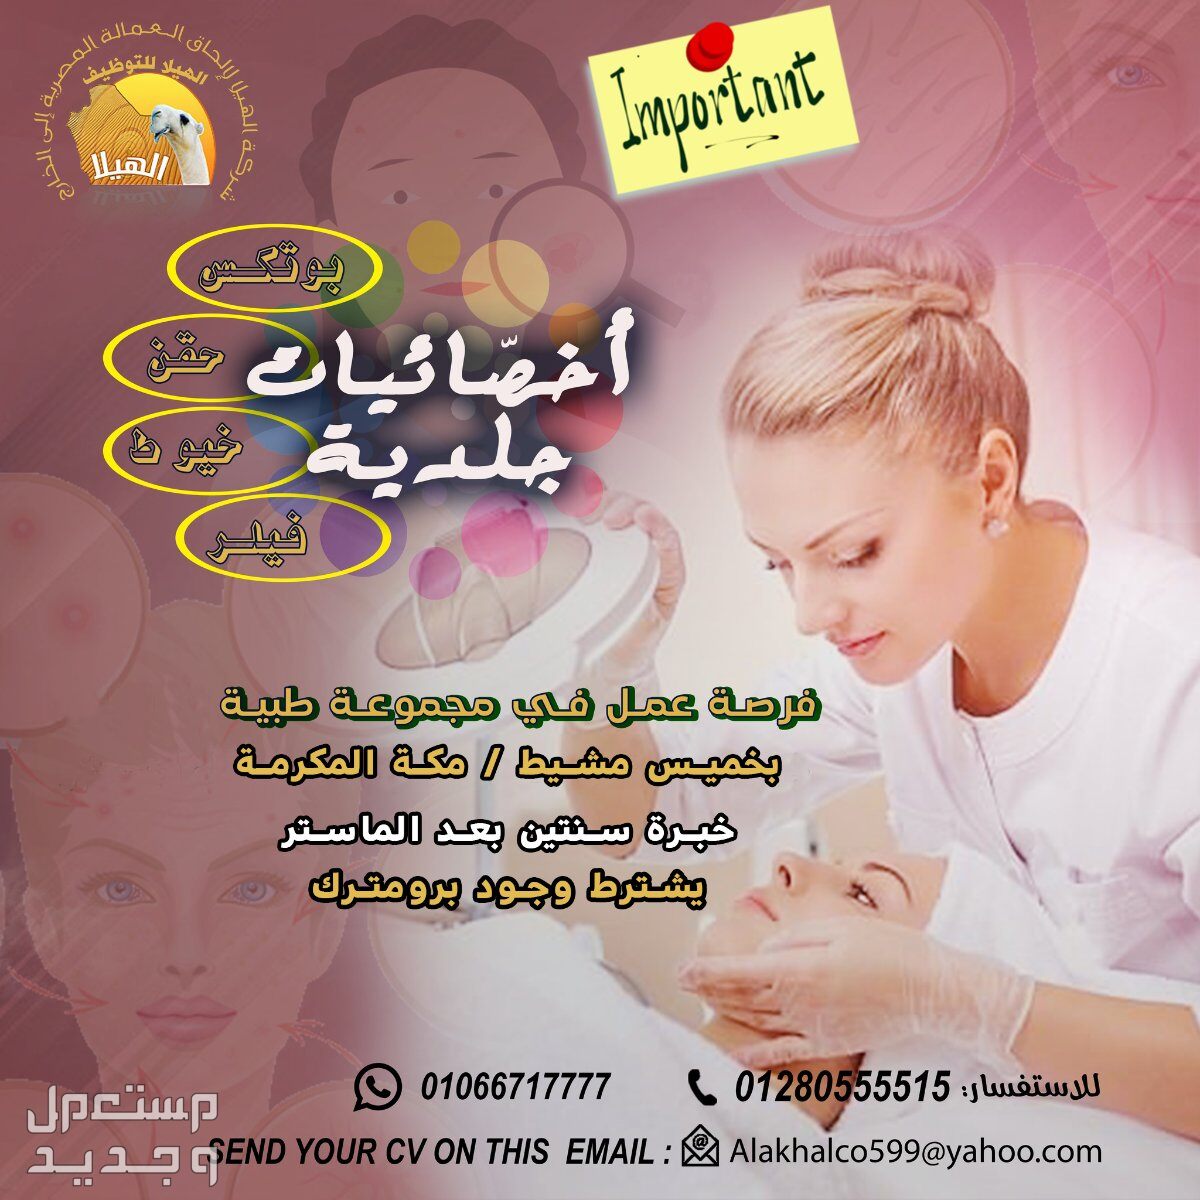 مطلوب لمجموعة طبية مكة المكرمة  بالمملكة العربية السعودية أخصّائيات جلدية وتجميل